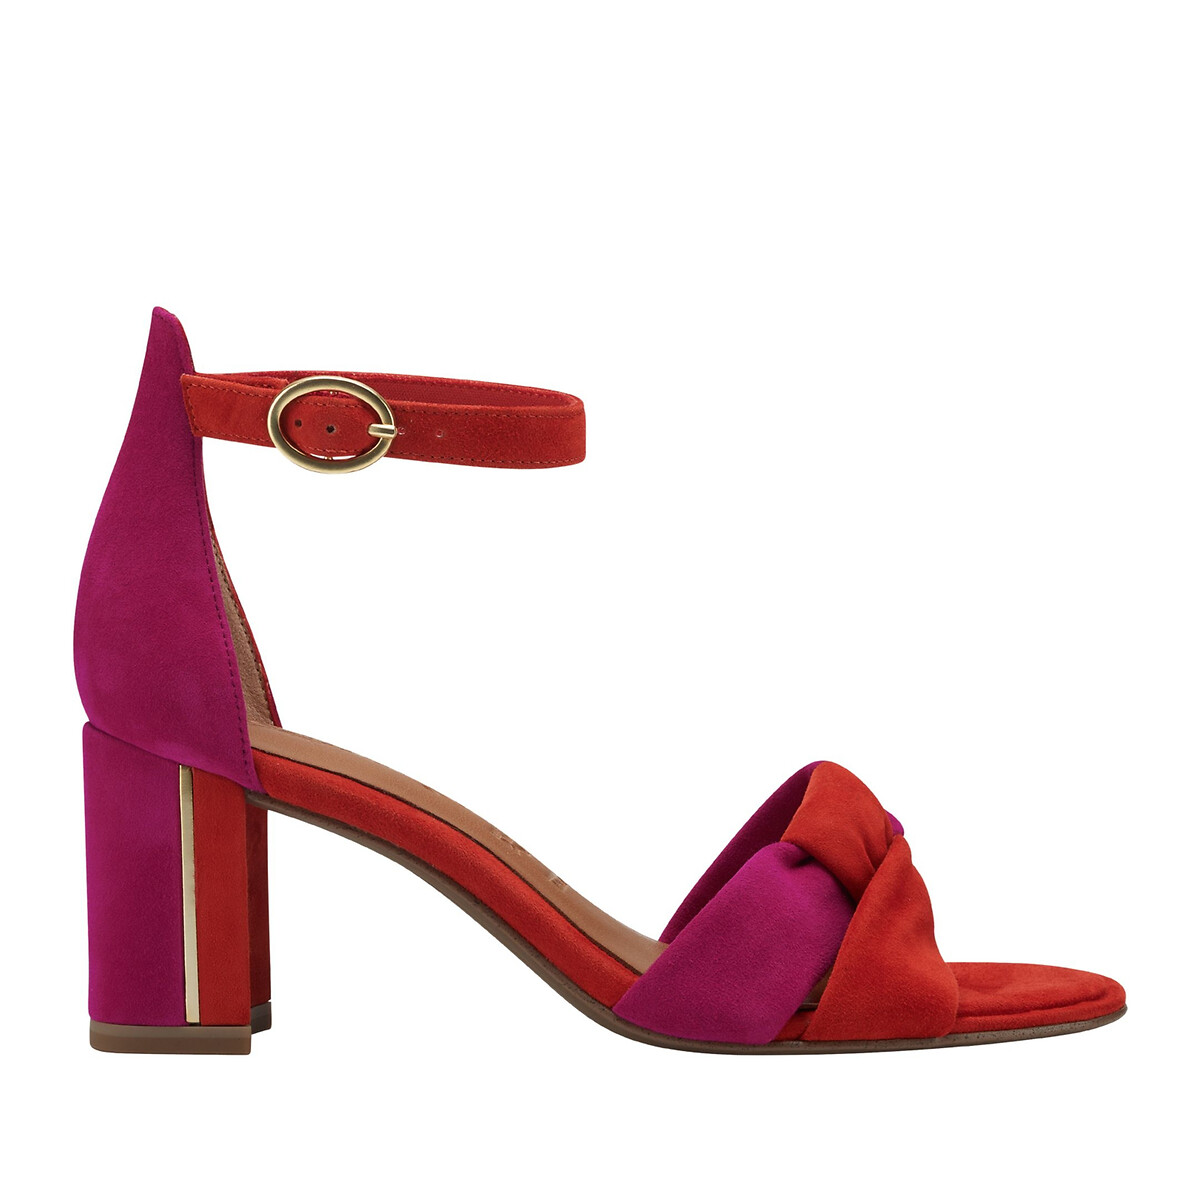 Suede high heel sandals fuchsia Tamaris | La Redoute